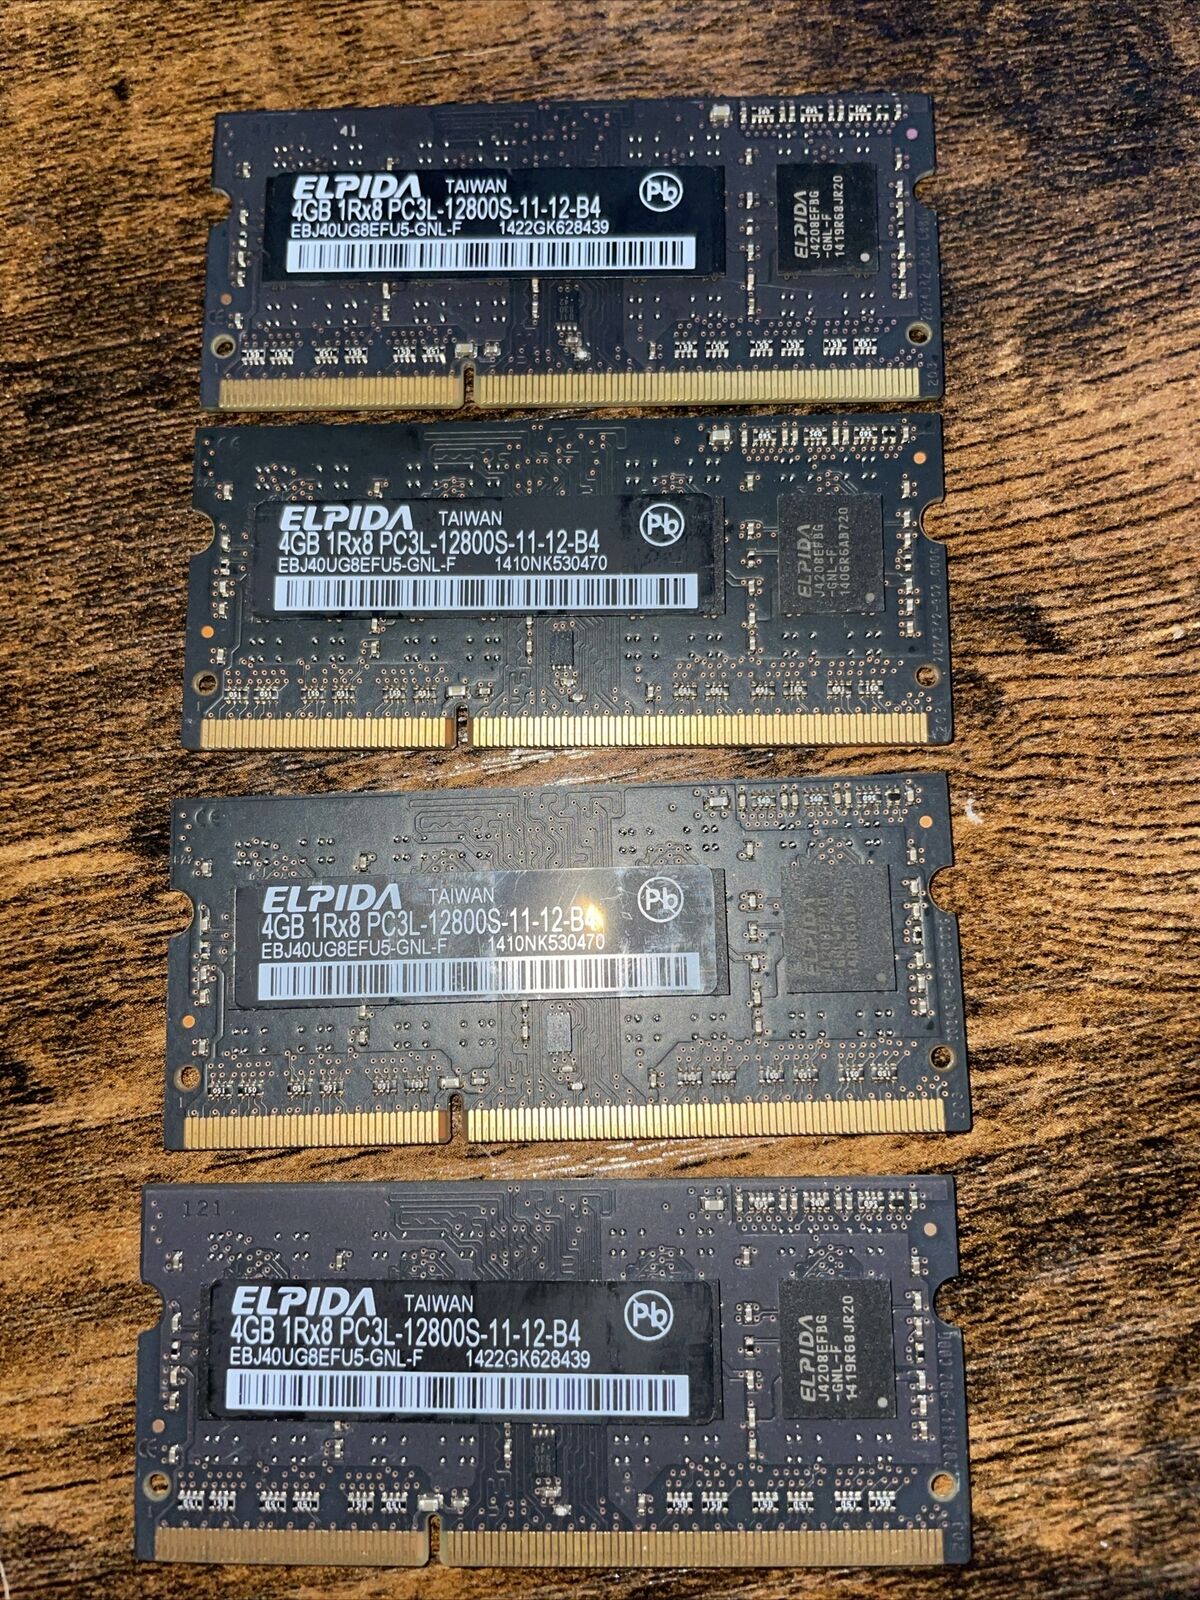 (4 Piece) Apple Elpida EBJ81UG8EFU5-GNL-F DDR3-12800S 16GB (4x4GB) SODIMM Memory